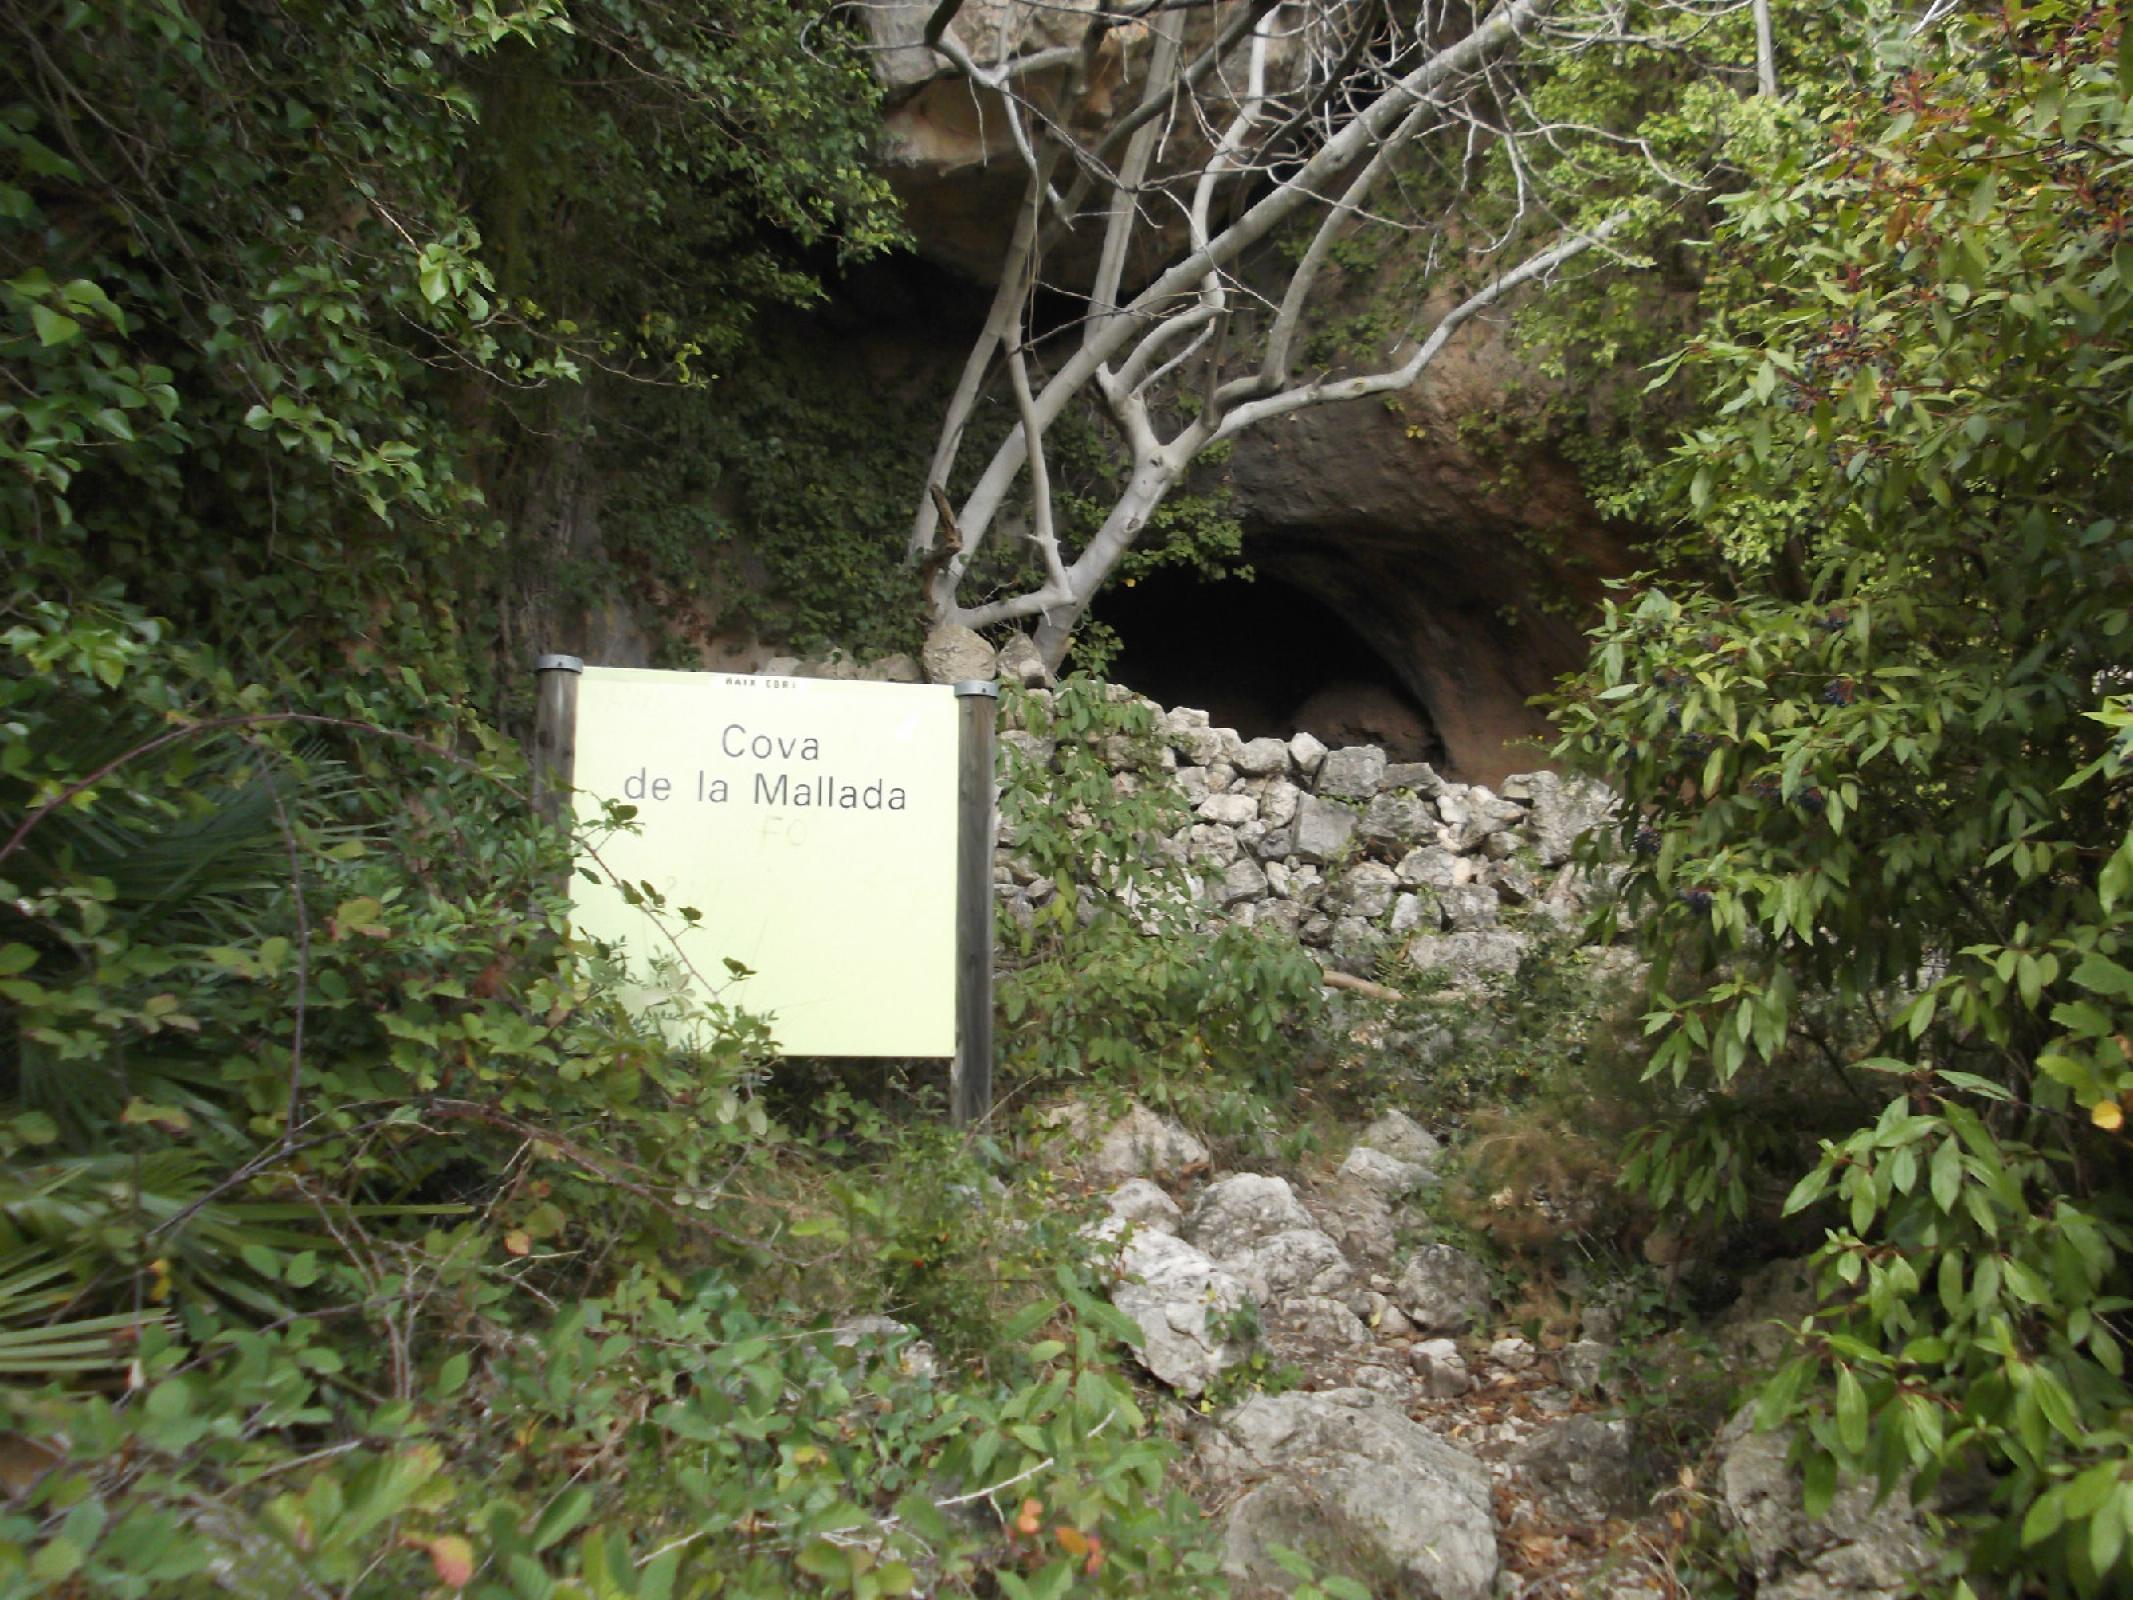 Cova de la Mallada